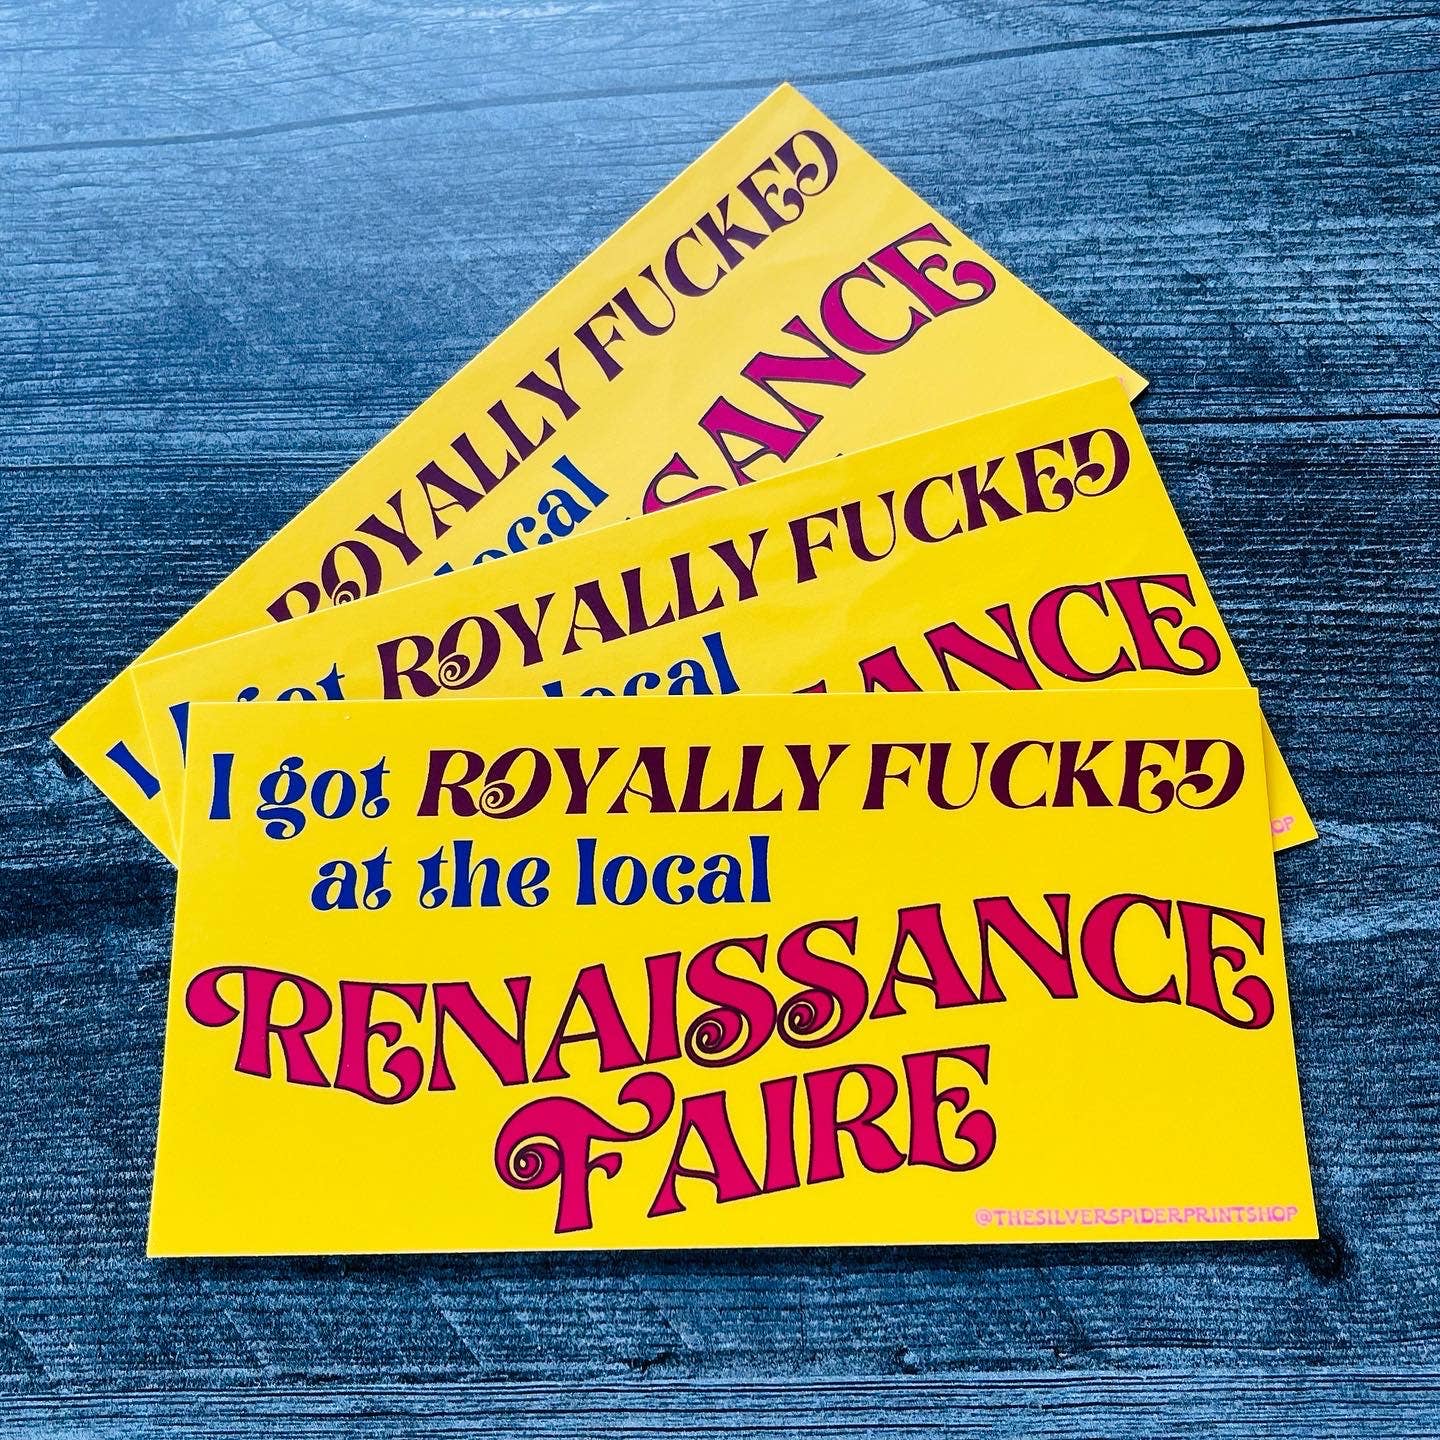 I got royally fucked at the Renaissance Faire